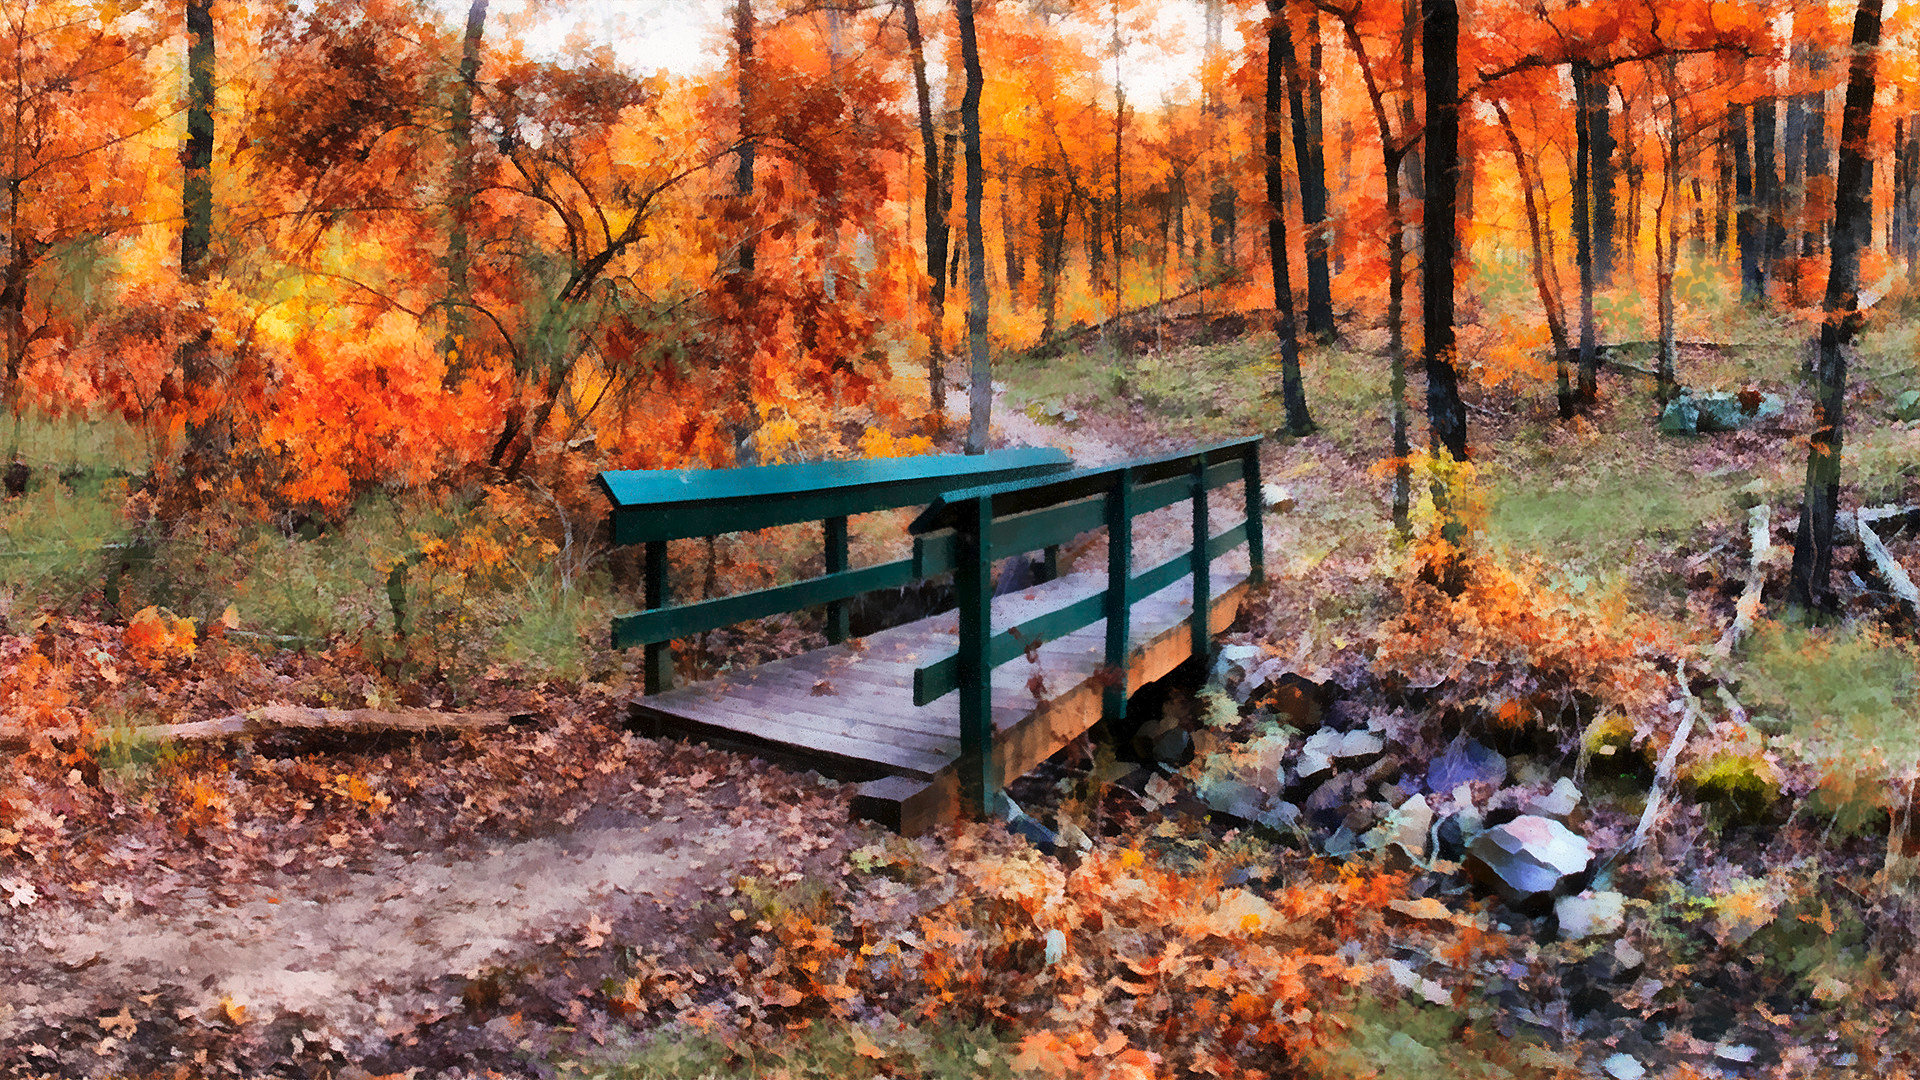 Green Bridge in Autumn Woods